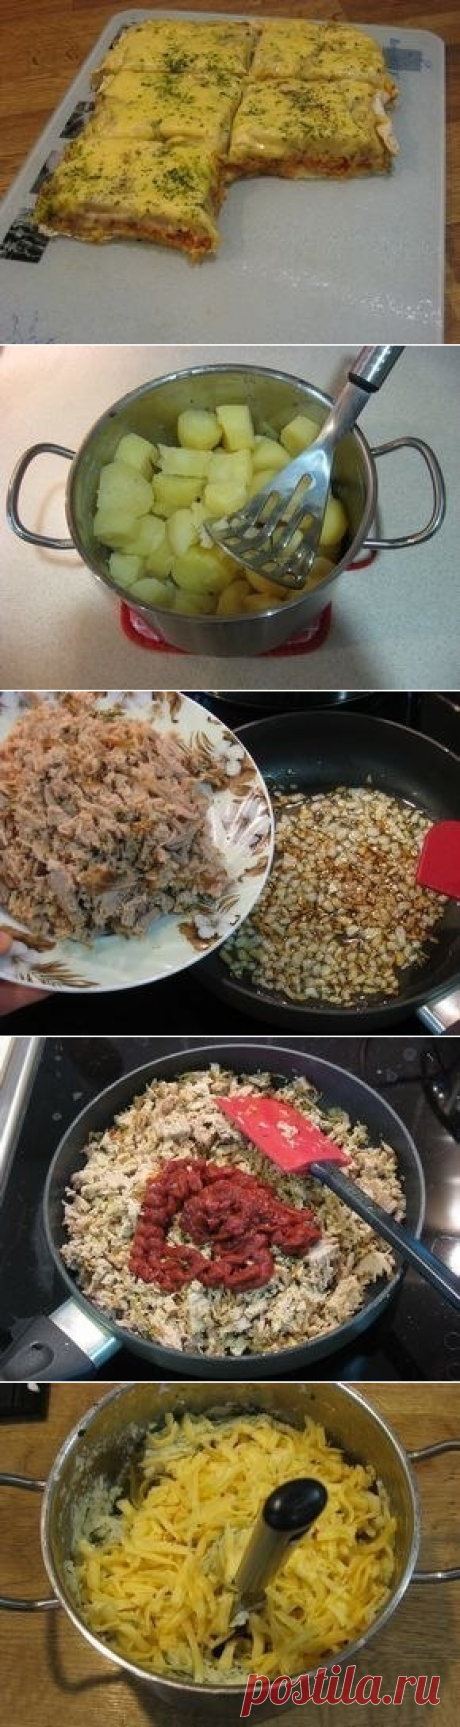 Как приготовить картофельная запеканка с мясом.  - рецепт, ингридиенты и фотографии